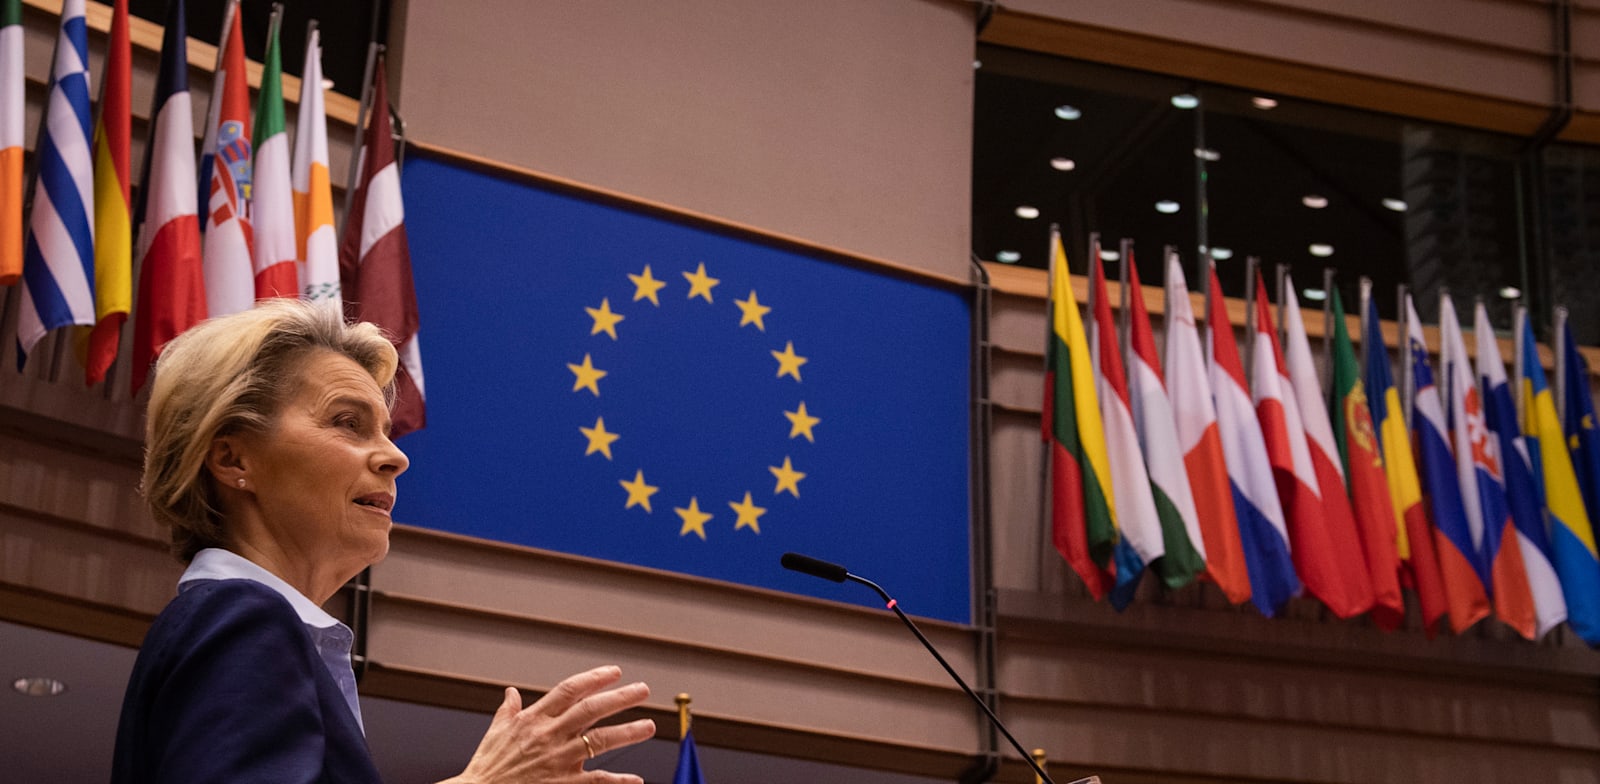 אורסולה פון דר-לאיין נואמת בפני הפרלמנט האירופי / צילום: John Thys